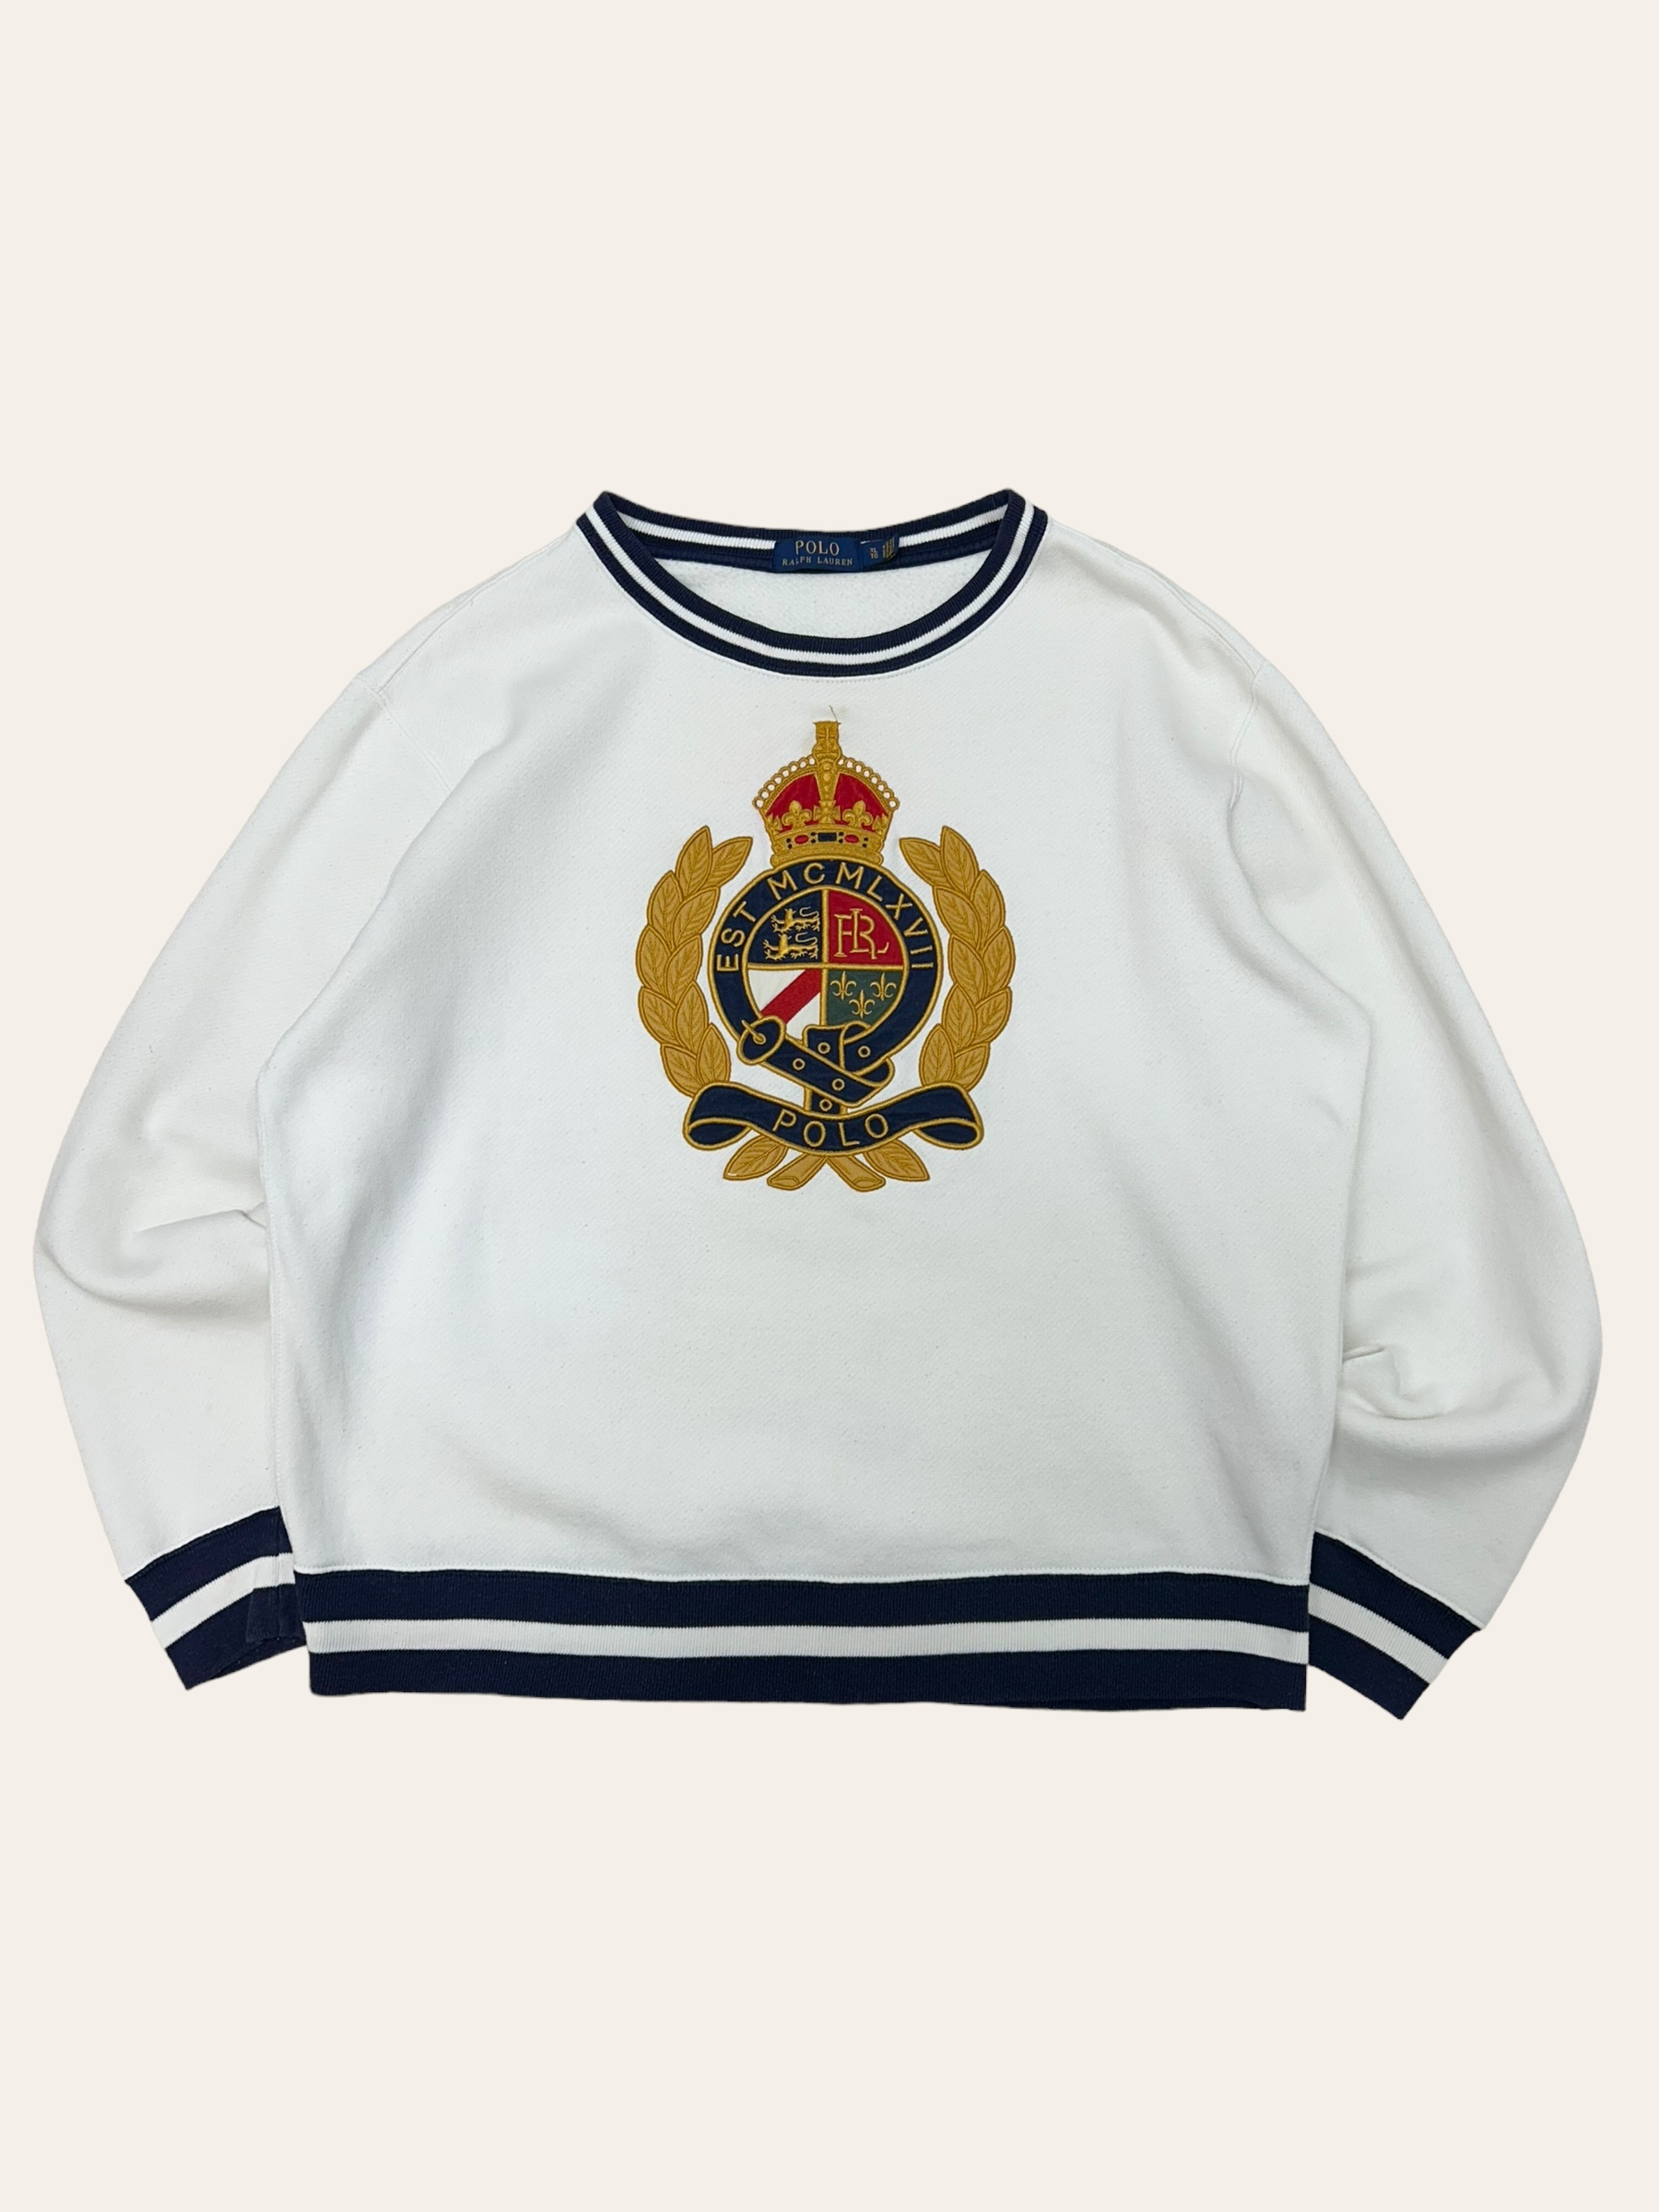 Polo ralph lauren white crest embroidered sweatshirt XL